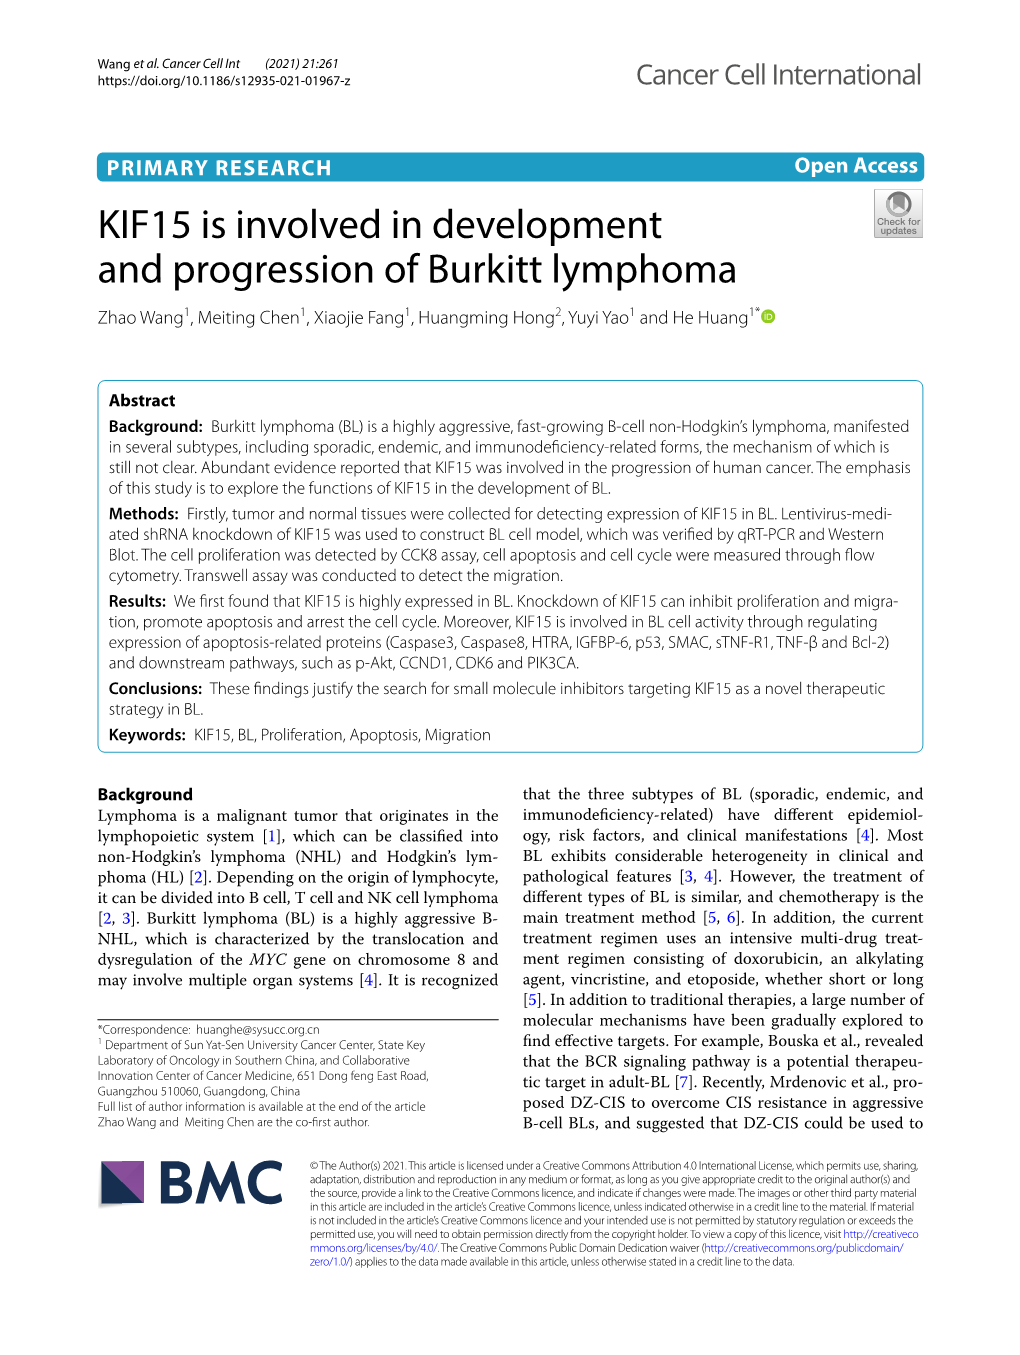 KIF15 Is Involved in Development and Progression of Burkitt Lymphoma Zhao Wang1, Meiting Chen1, Xiaojie Fang1, Huangming Hong2, Yuyi Yao1 and He Huang1*